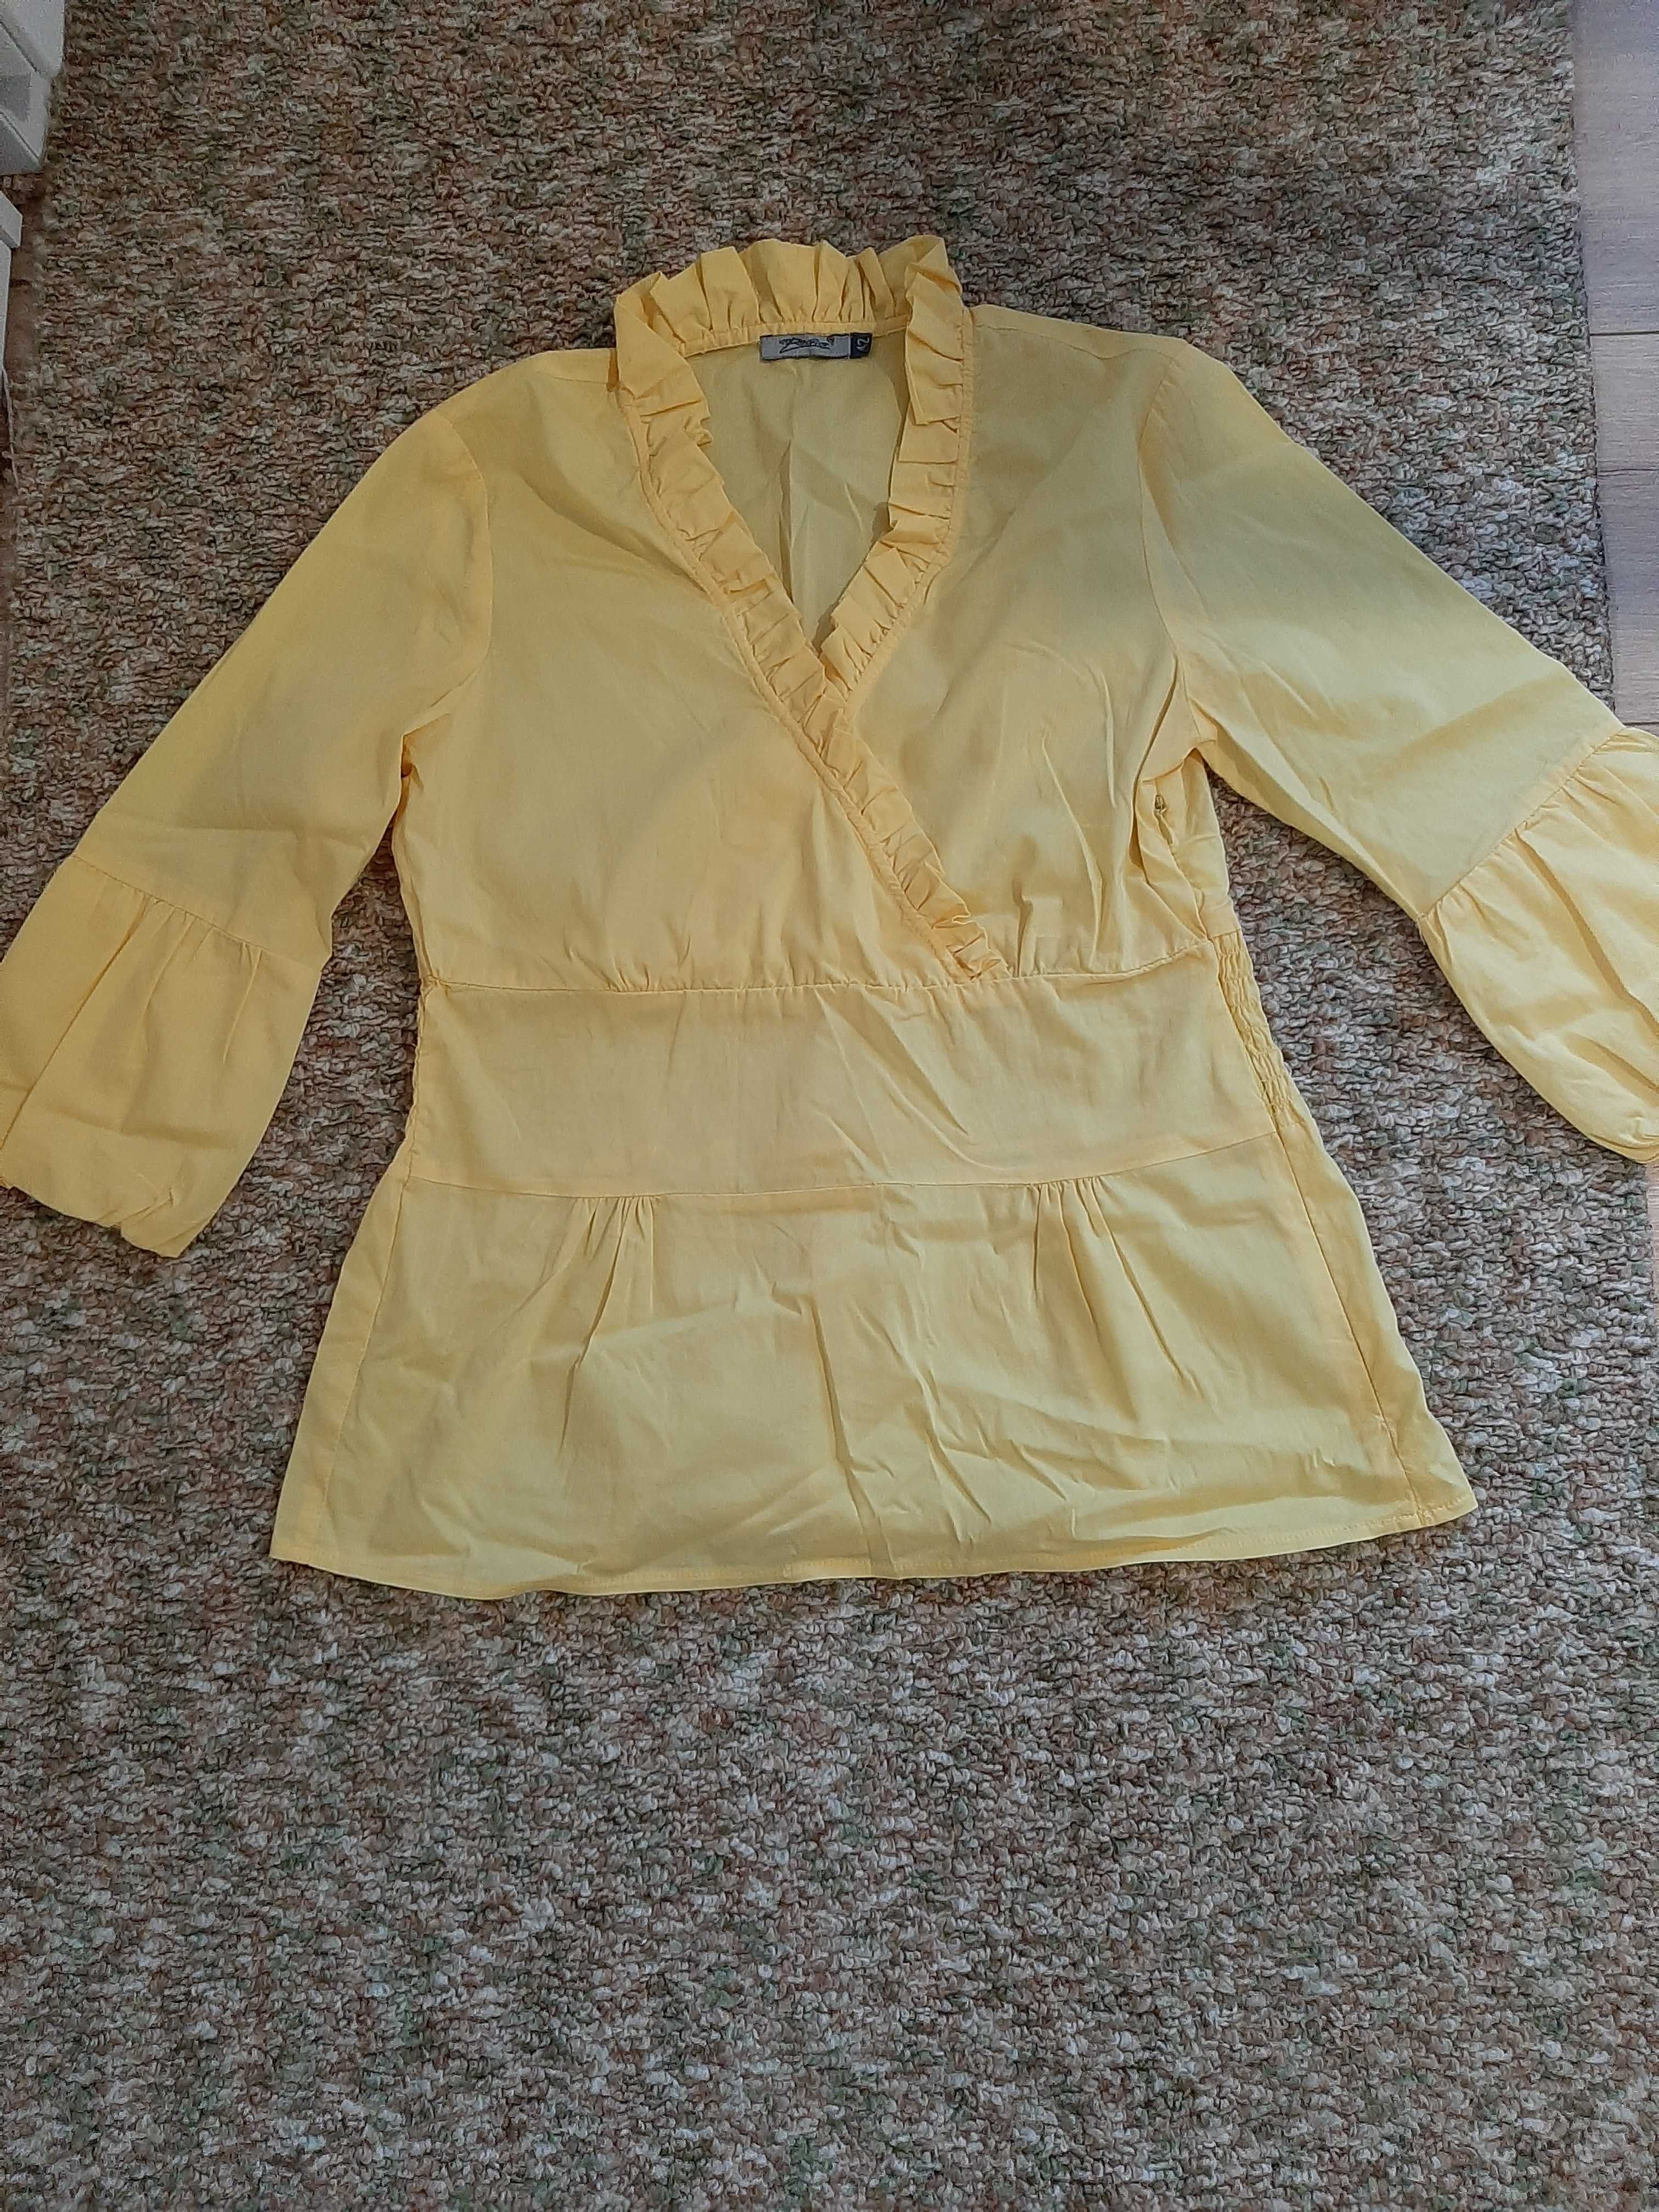 Дамска блуза, жълта